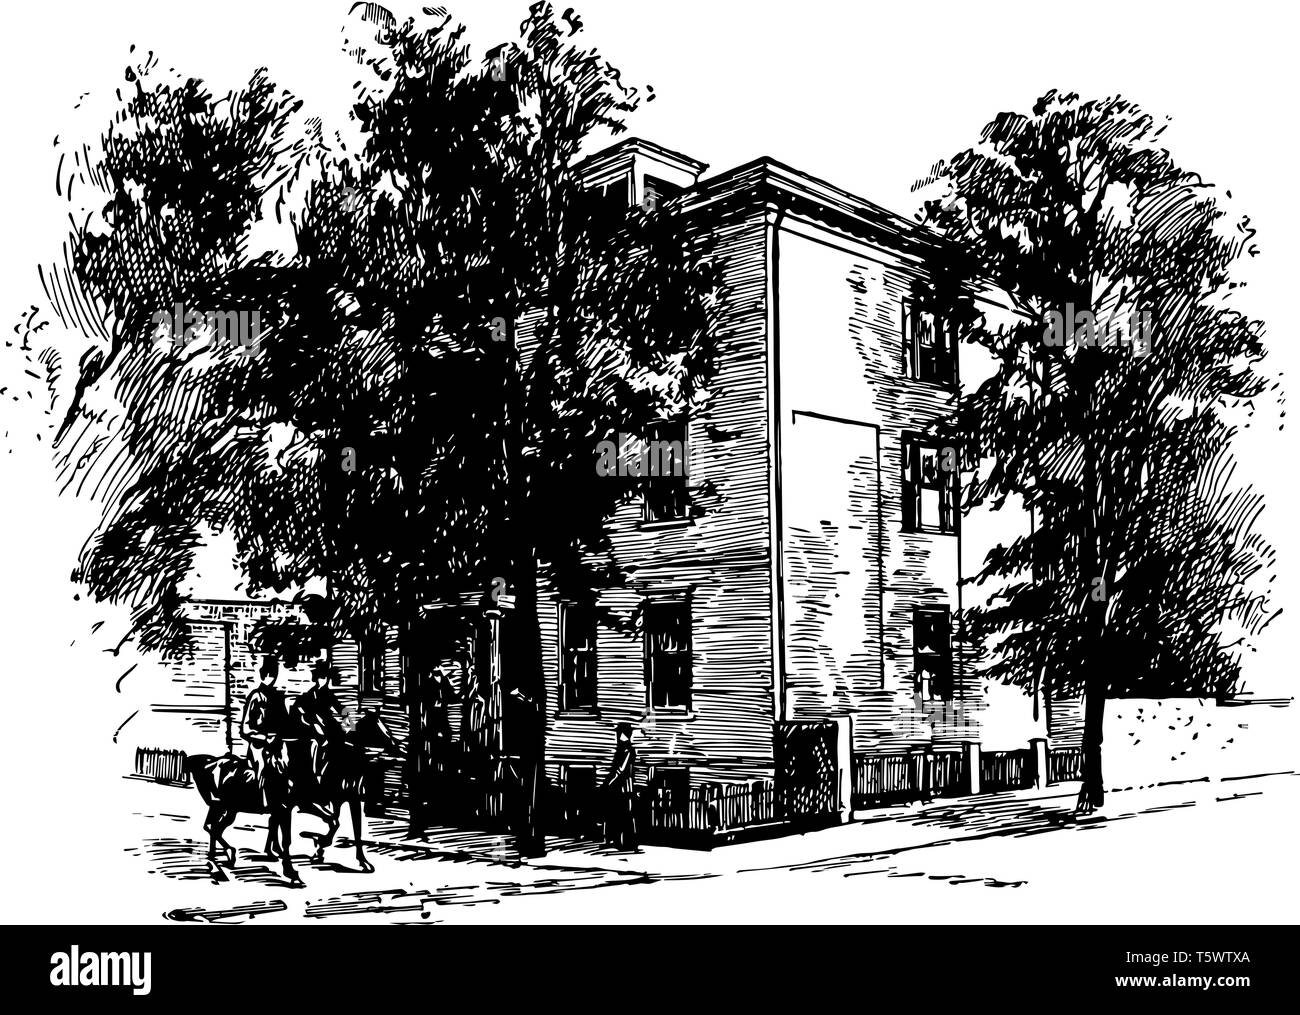 Das Bild zeigt das Haus von Jefferson Davis in Richmond. Das Haus ist umgeben von Bäumen. Das Haus hat Streikposten zu fechten. Zwei Reiter Reisen von Stock Vektor